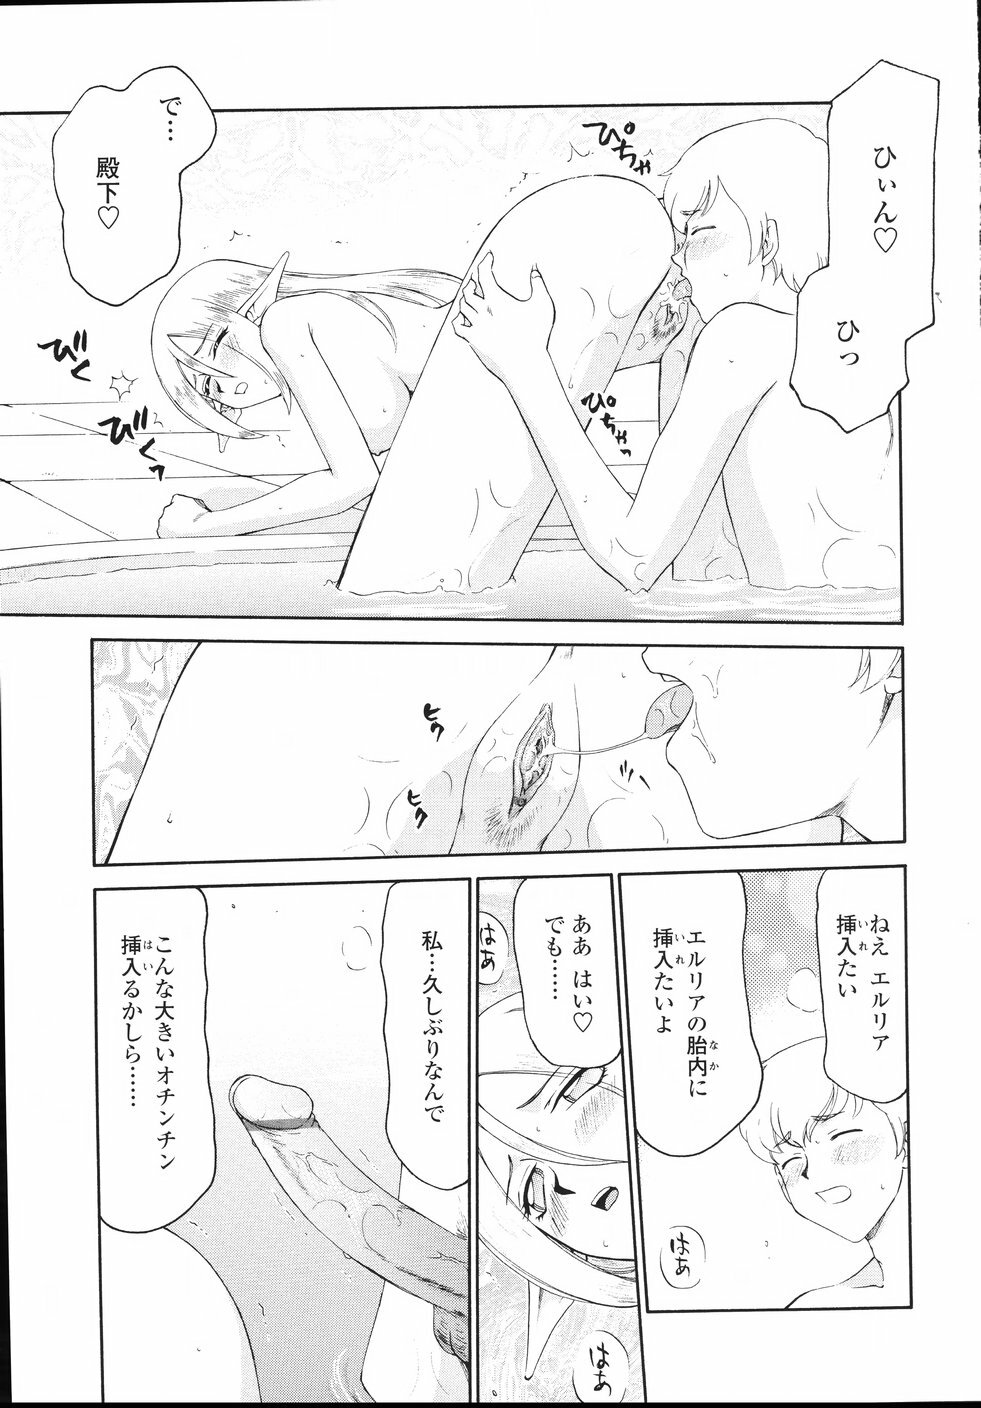 [Taira Hajime] Eruria page 24 full